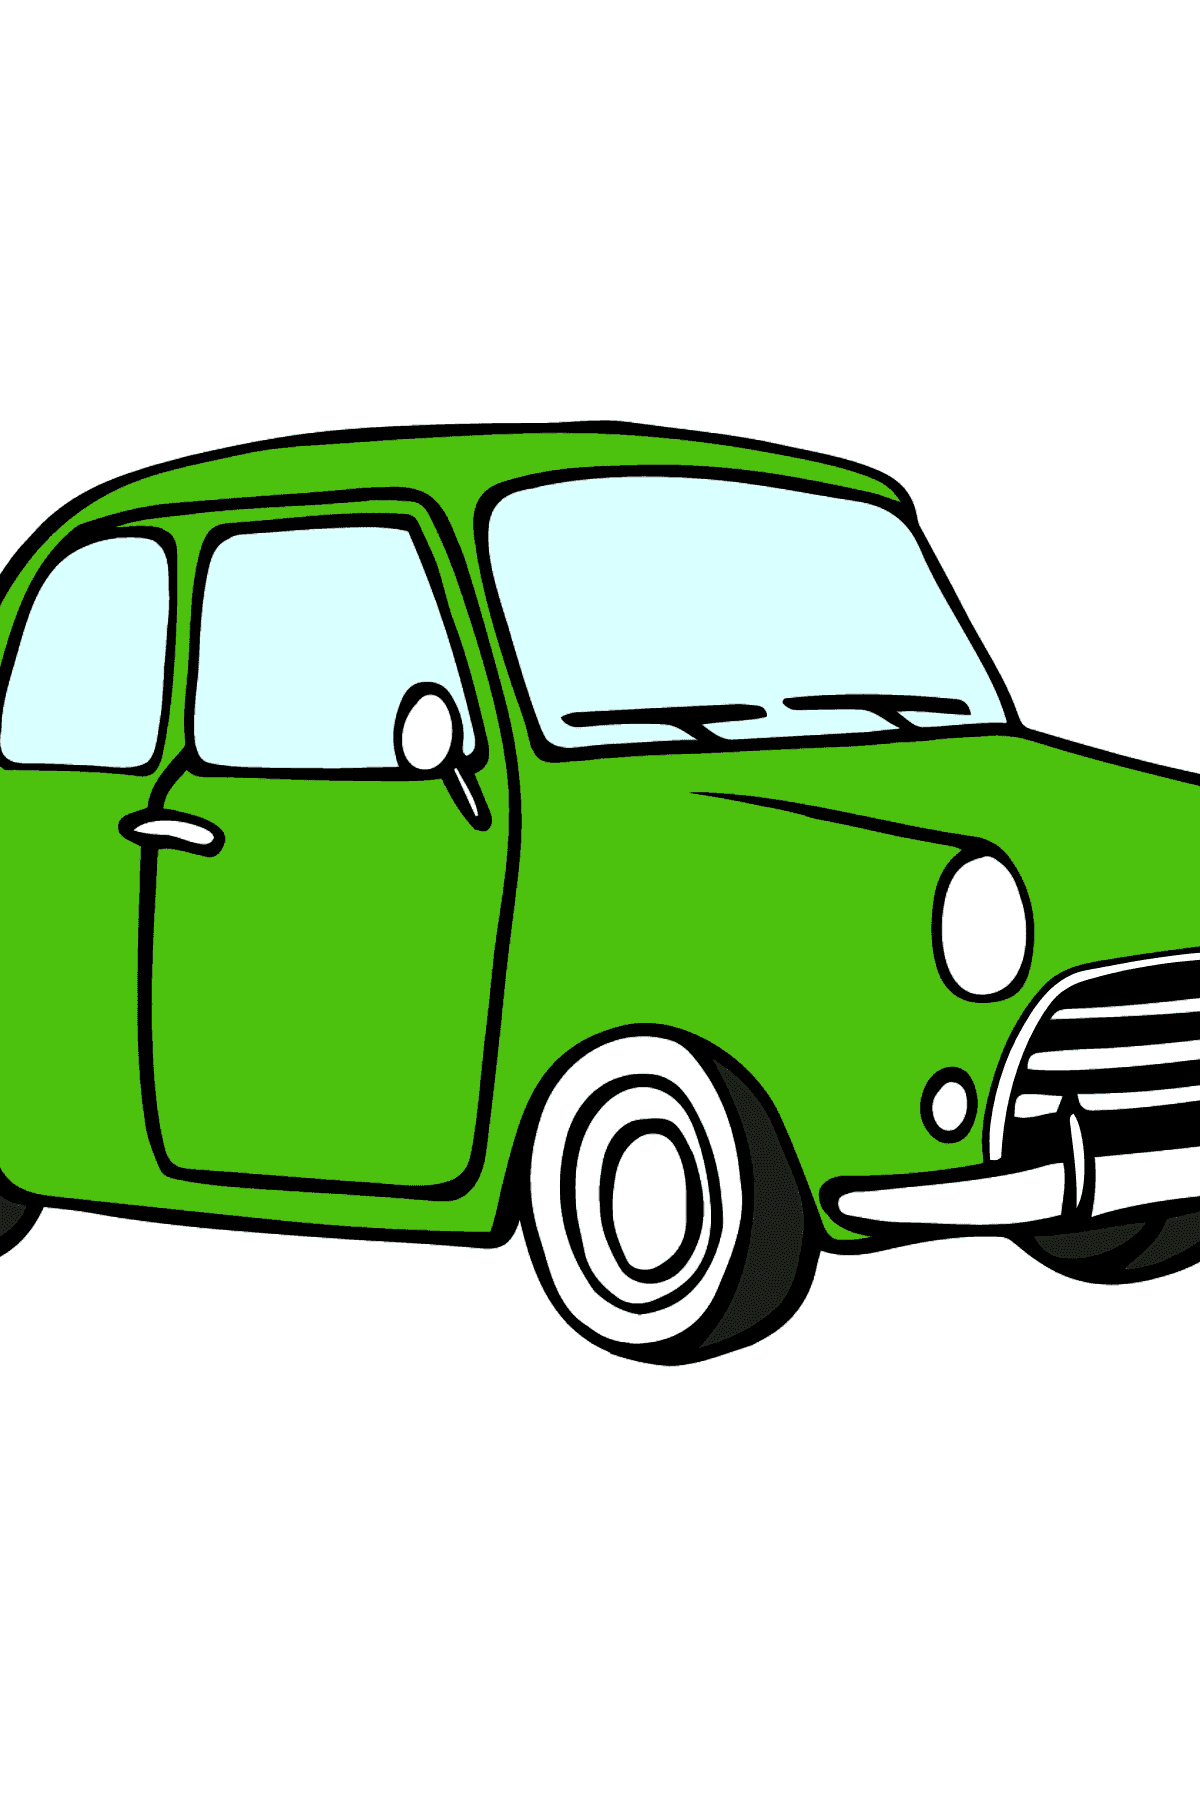 Dibujo de coche Fiat 600 para colorear (coche verde) - Dibujos para Colorear para Niños